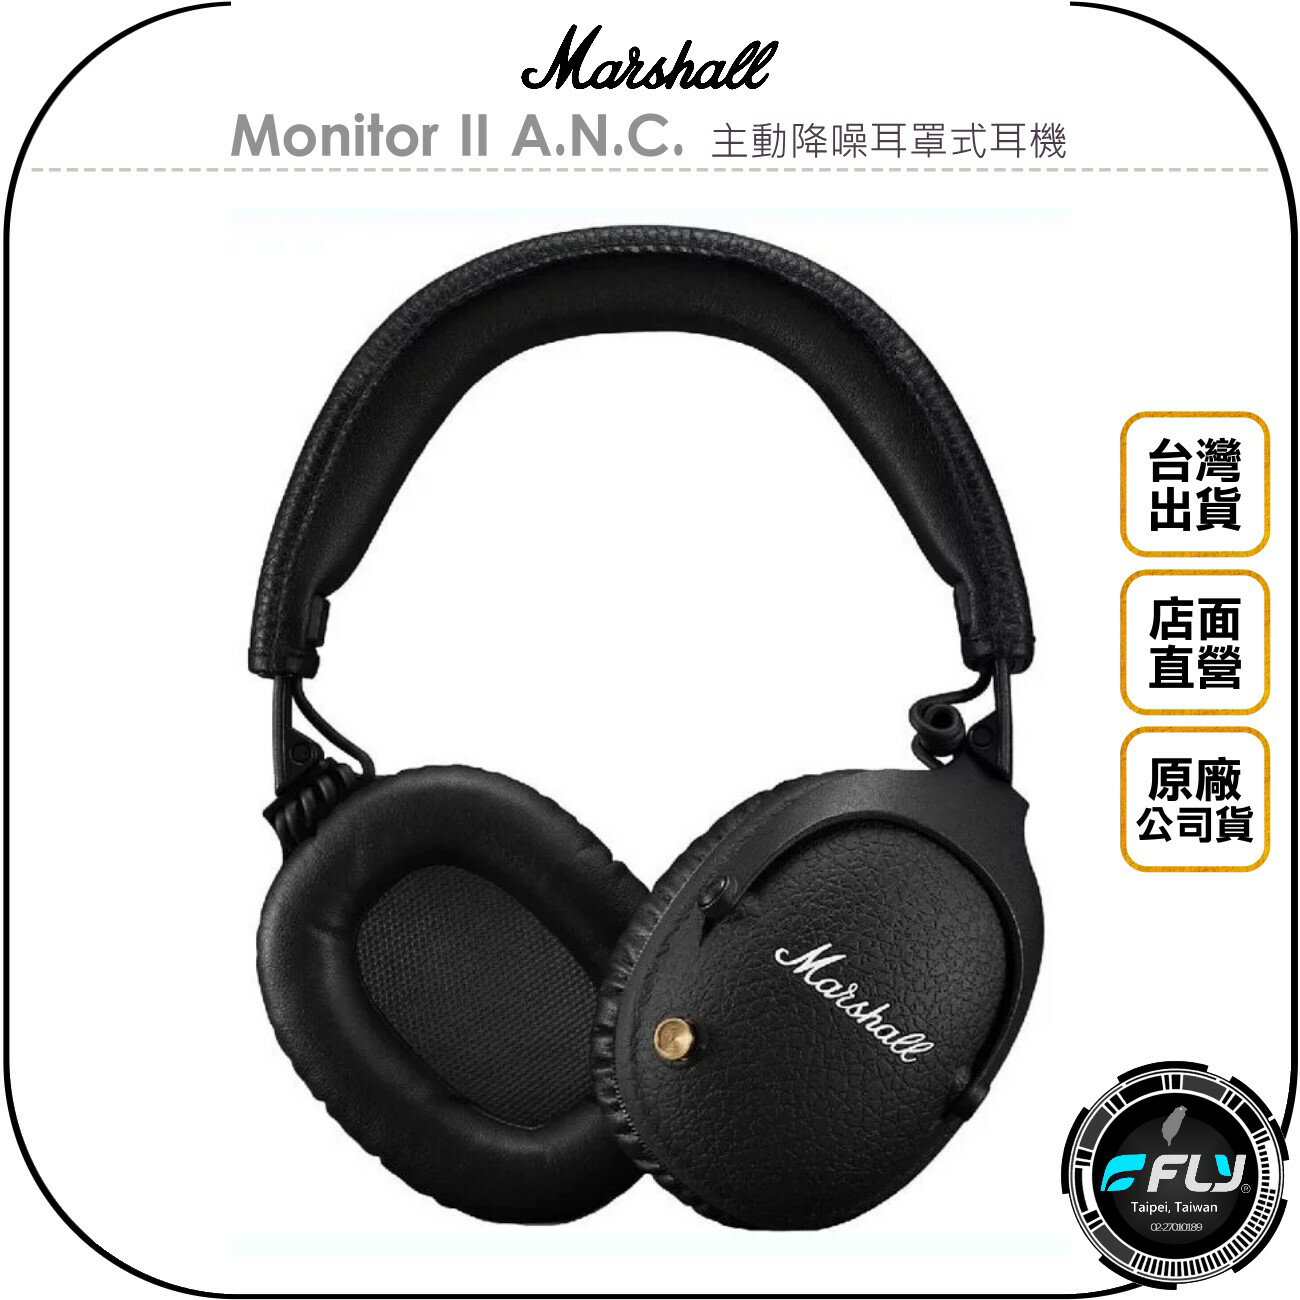 《飛翔無線3C》Marshall Monitor II A.N.C. 主動降噪耳罩式耳機◉公司貨◉頭戴藍牙◉藍芽通話